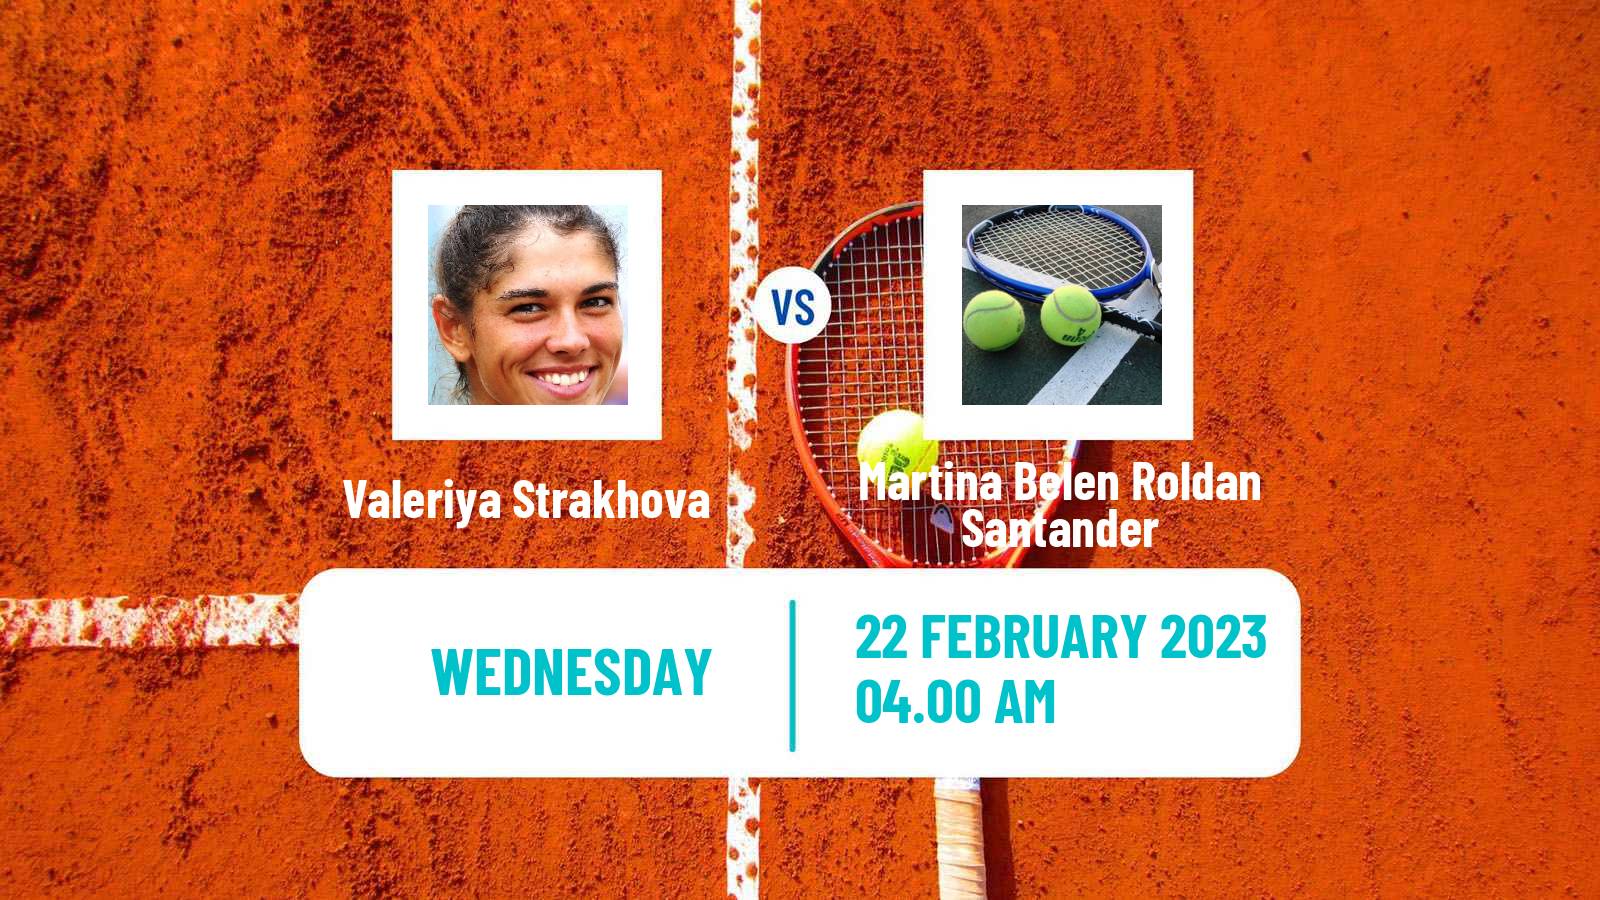 Tennis ITF Tournaments Valeriya Strakhova - Martina Belen Roldan Santander